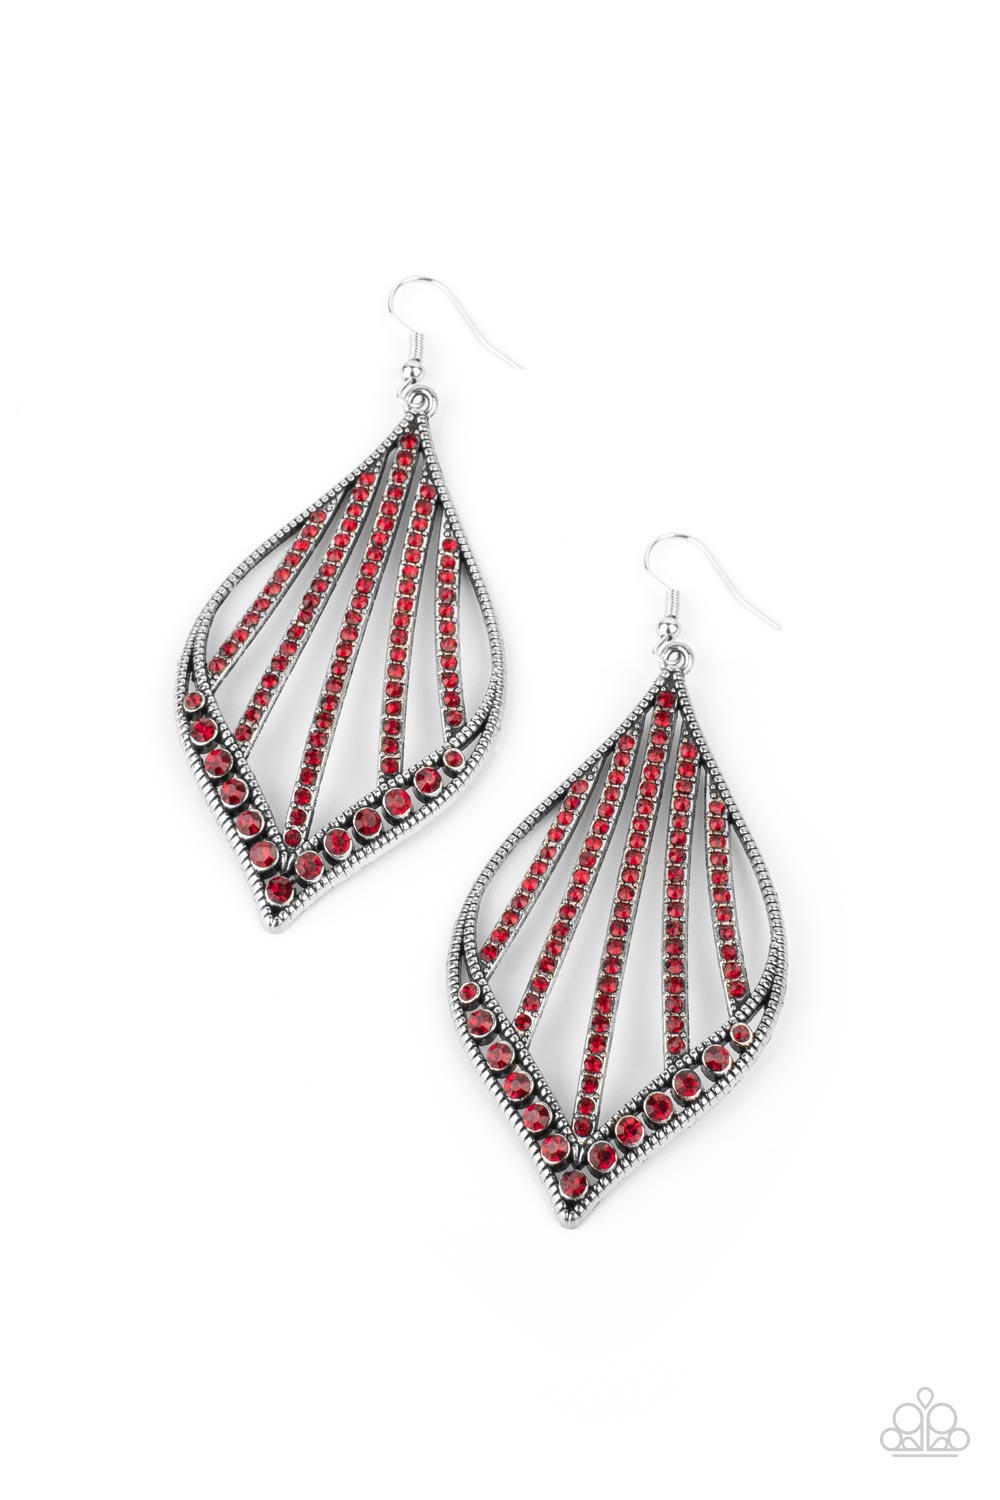 Showcase Sparkle Red Earrings - Daria's Blings N Things